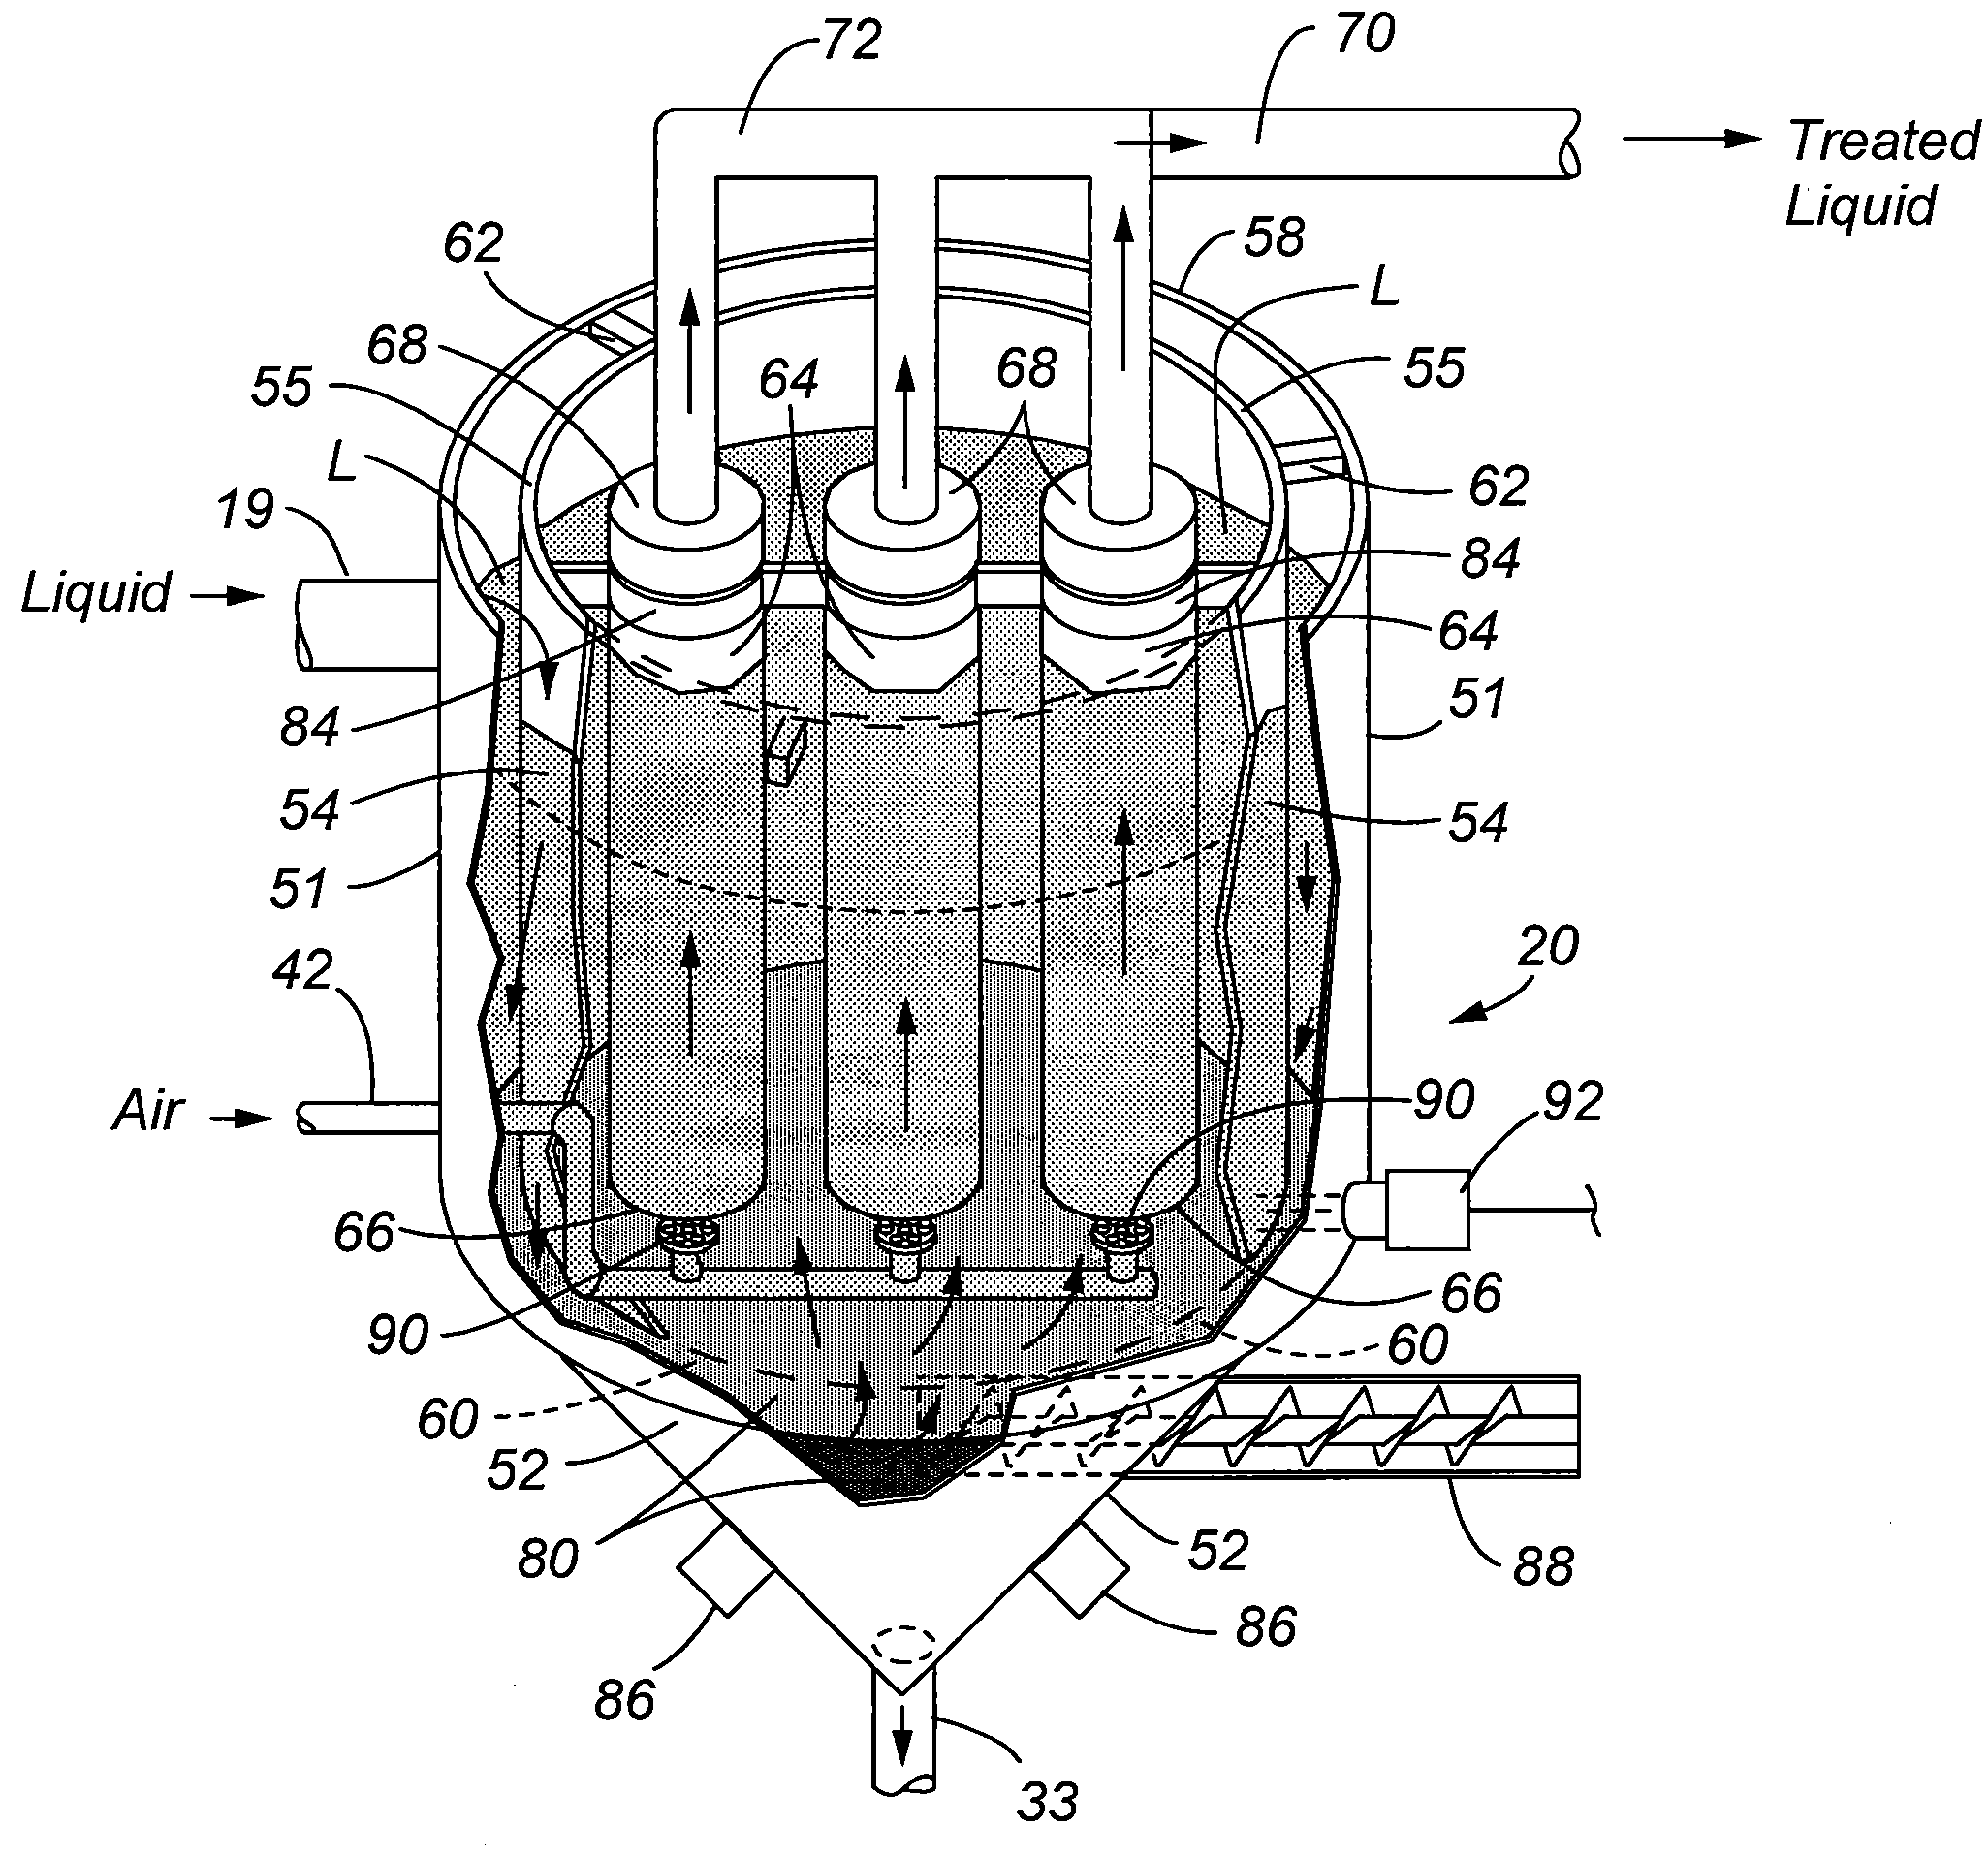 Method and apparatus for treatment of contaminated liquid